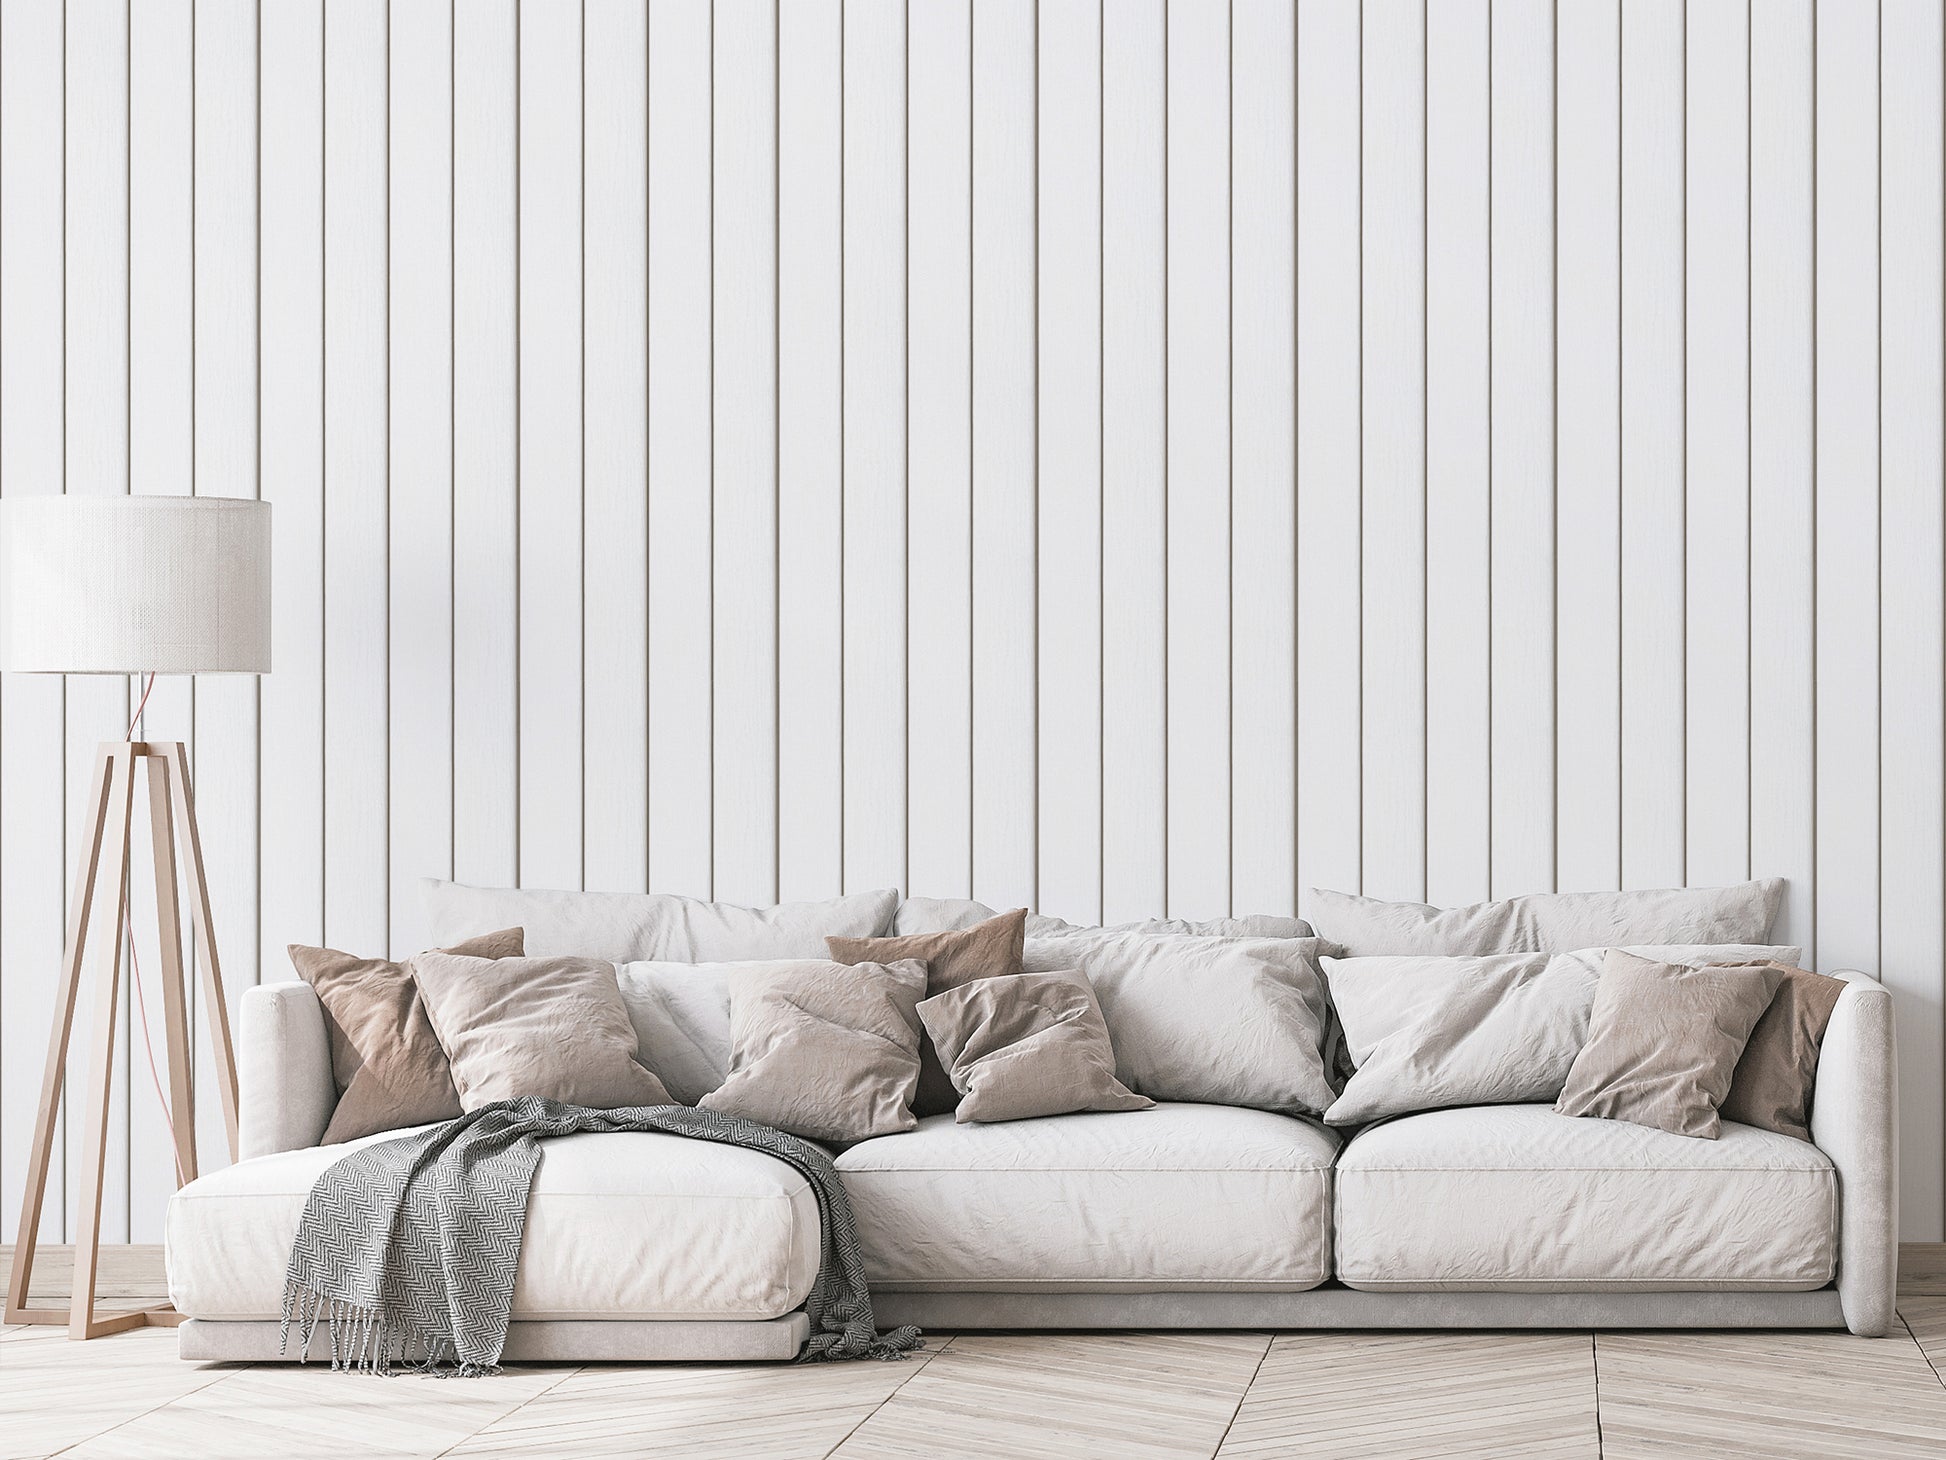 Airin - White Wood Wall Wallpaper